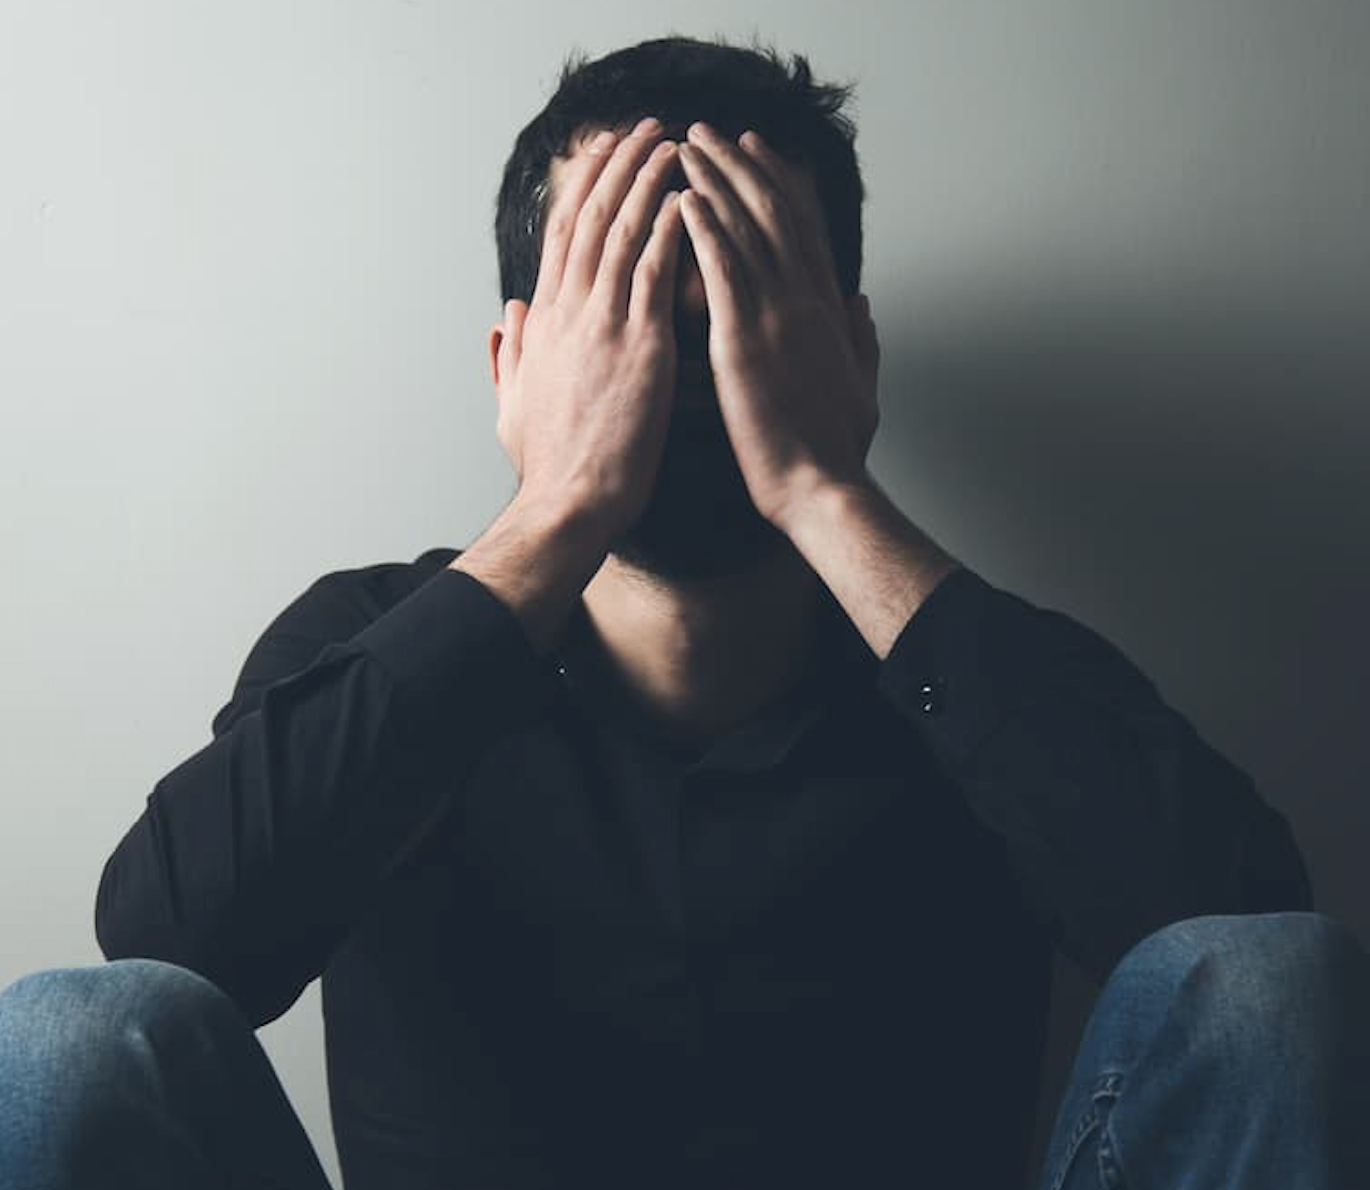 La ansiedad y la depresión son comunes entre los pacientes con nefritis lúpica